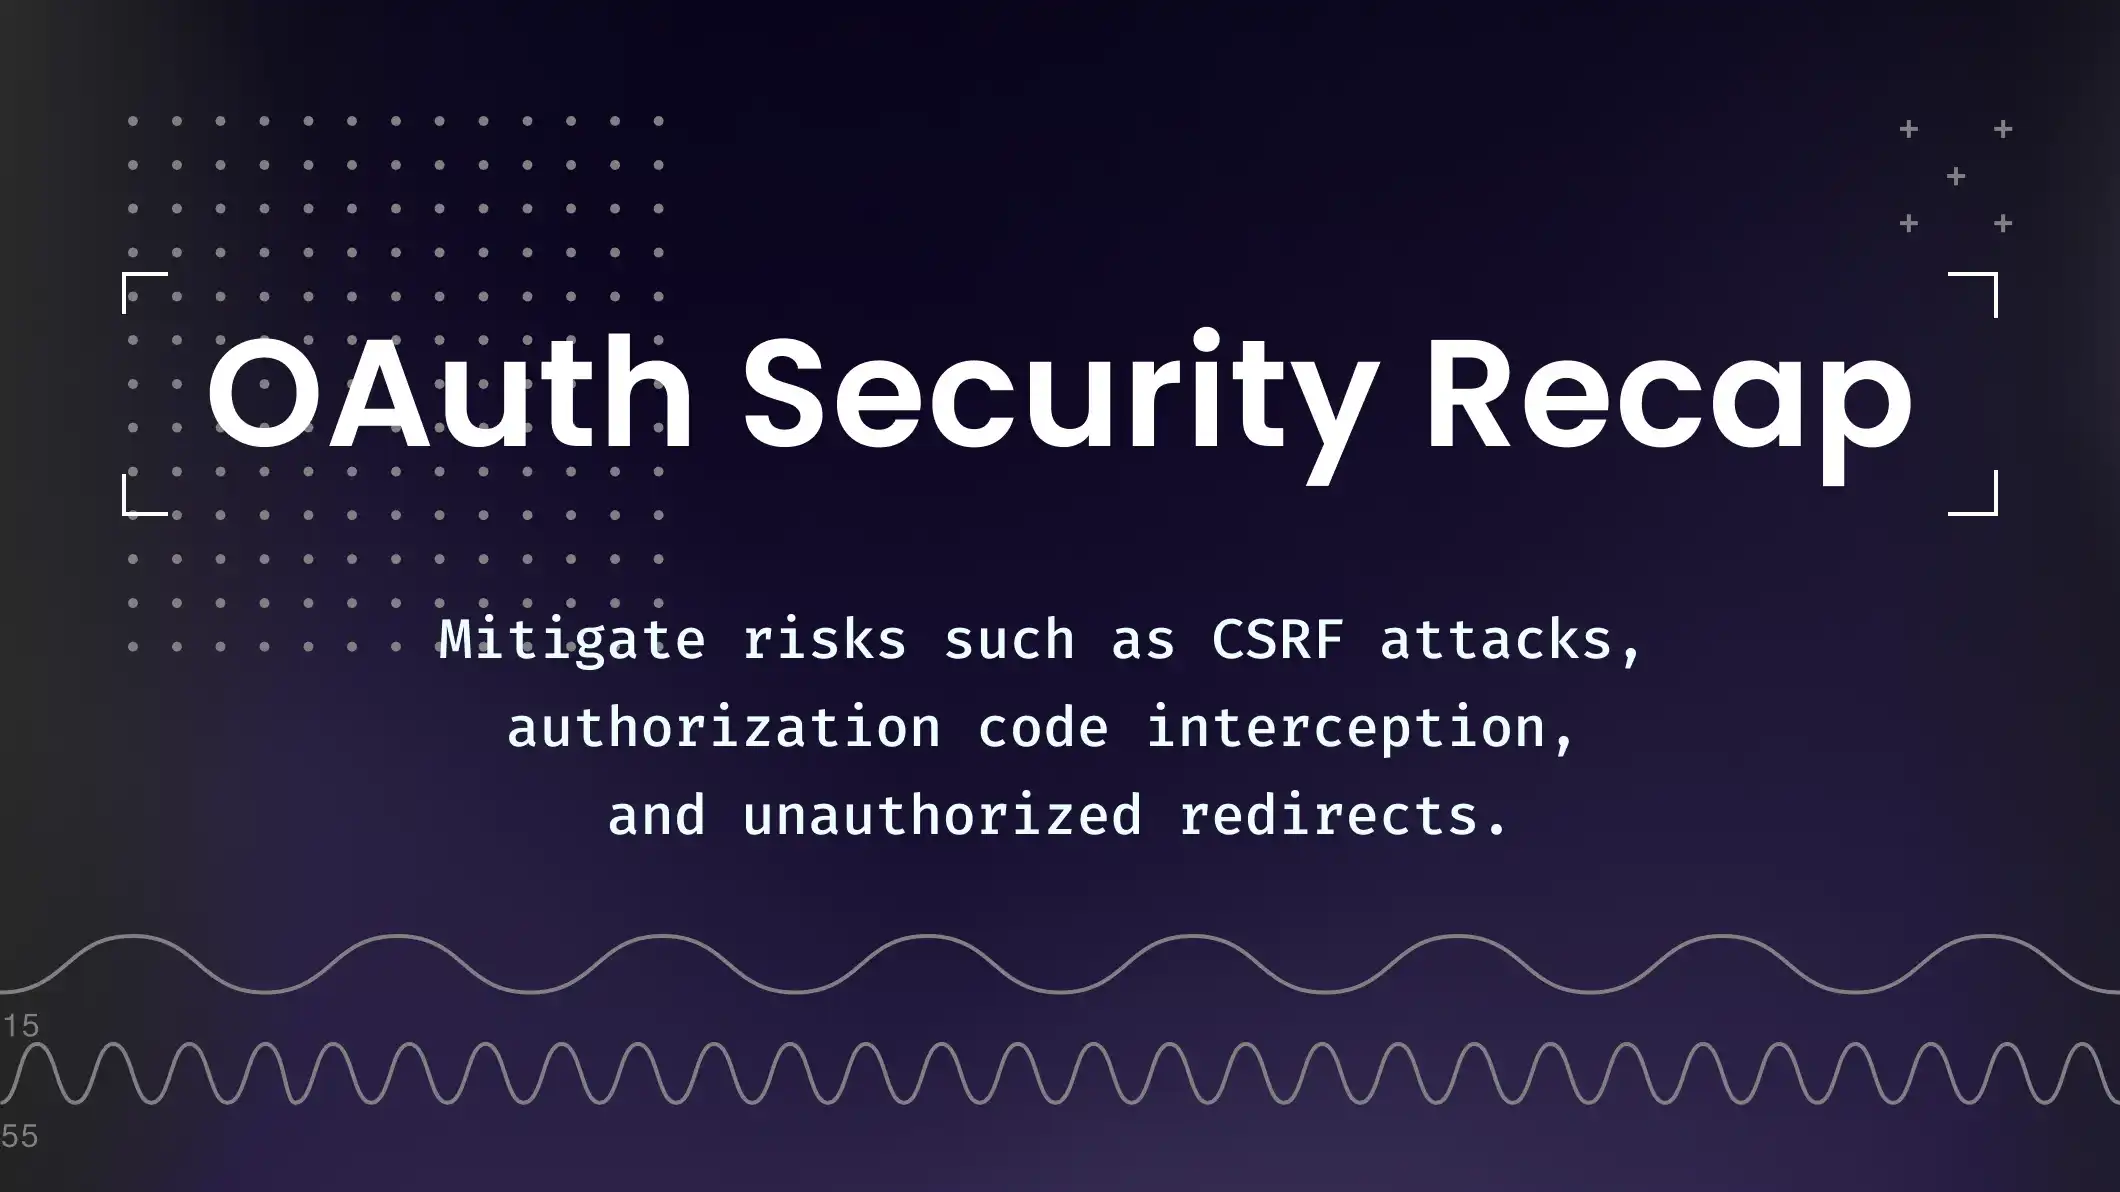 A brief OAuth security recap